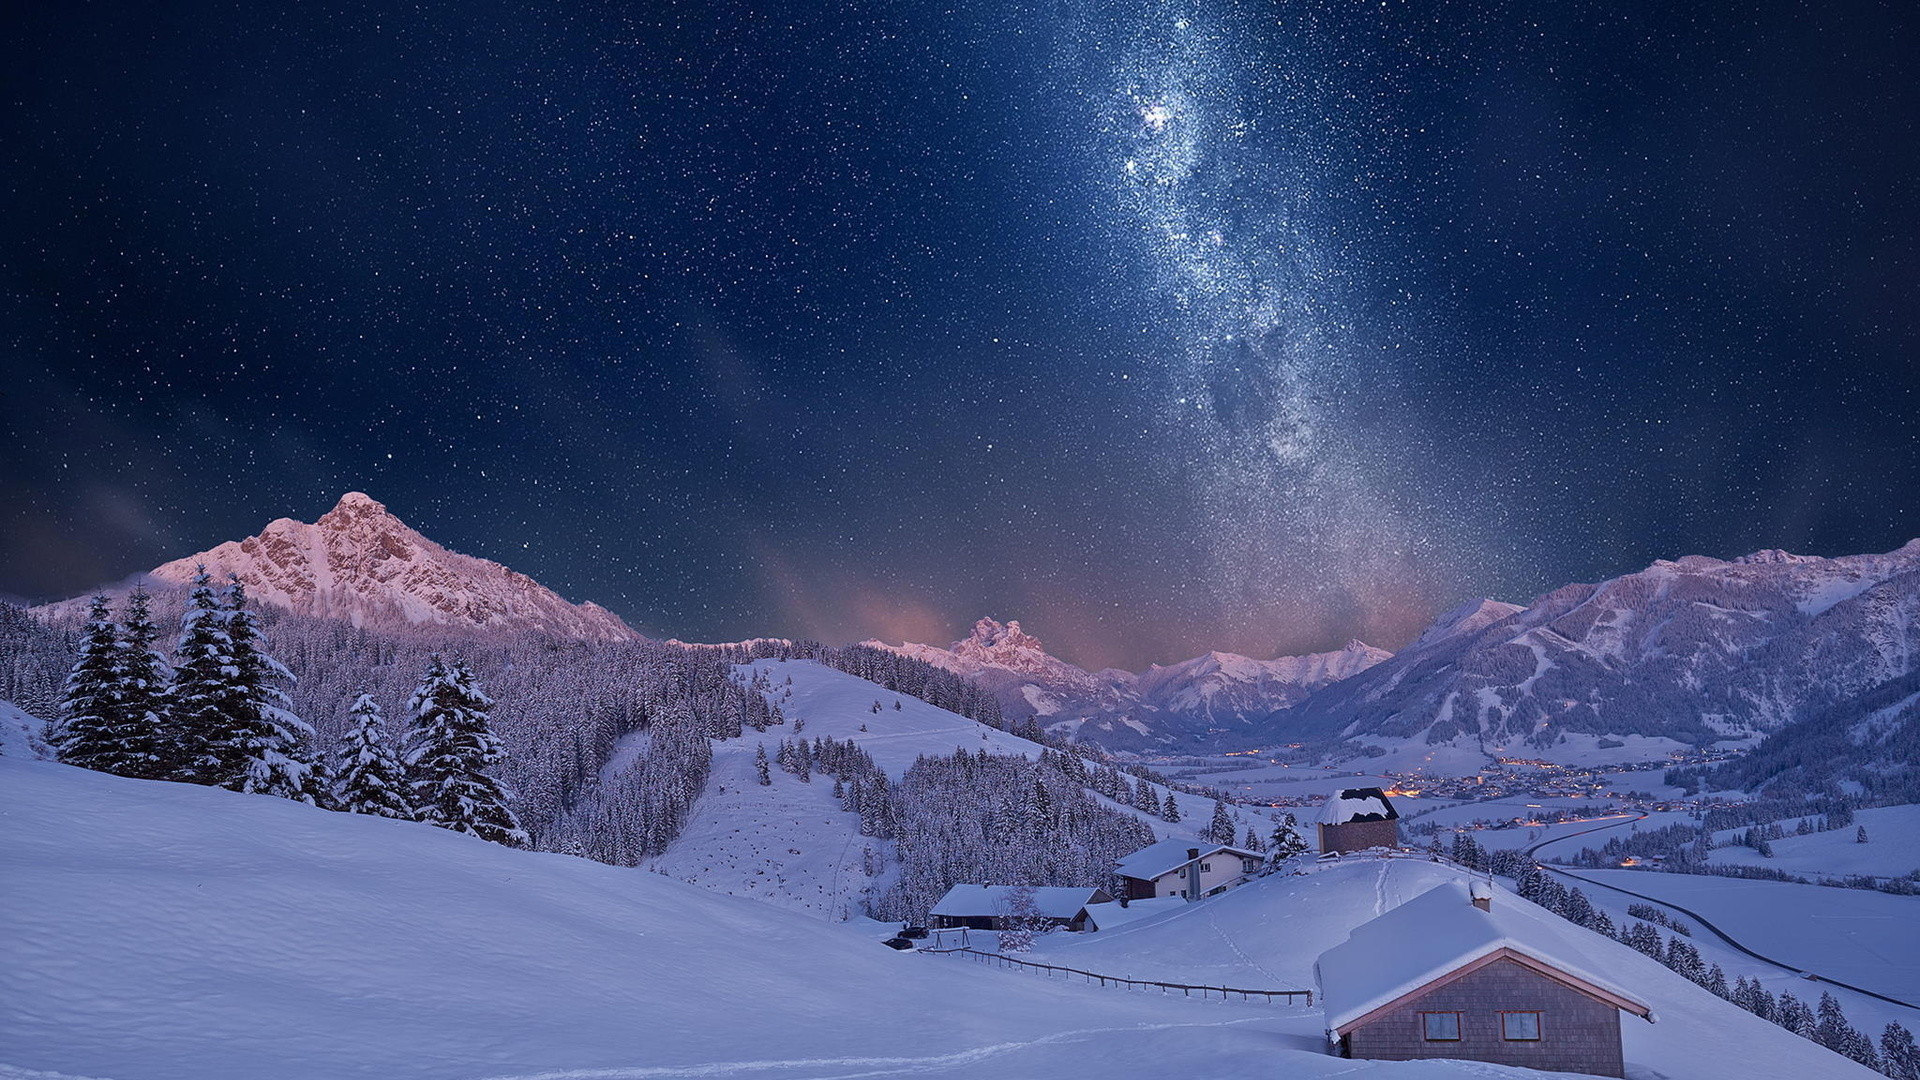 1920x1080 Milky Way Sky over Winter Village